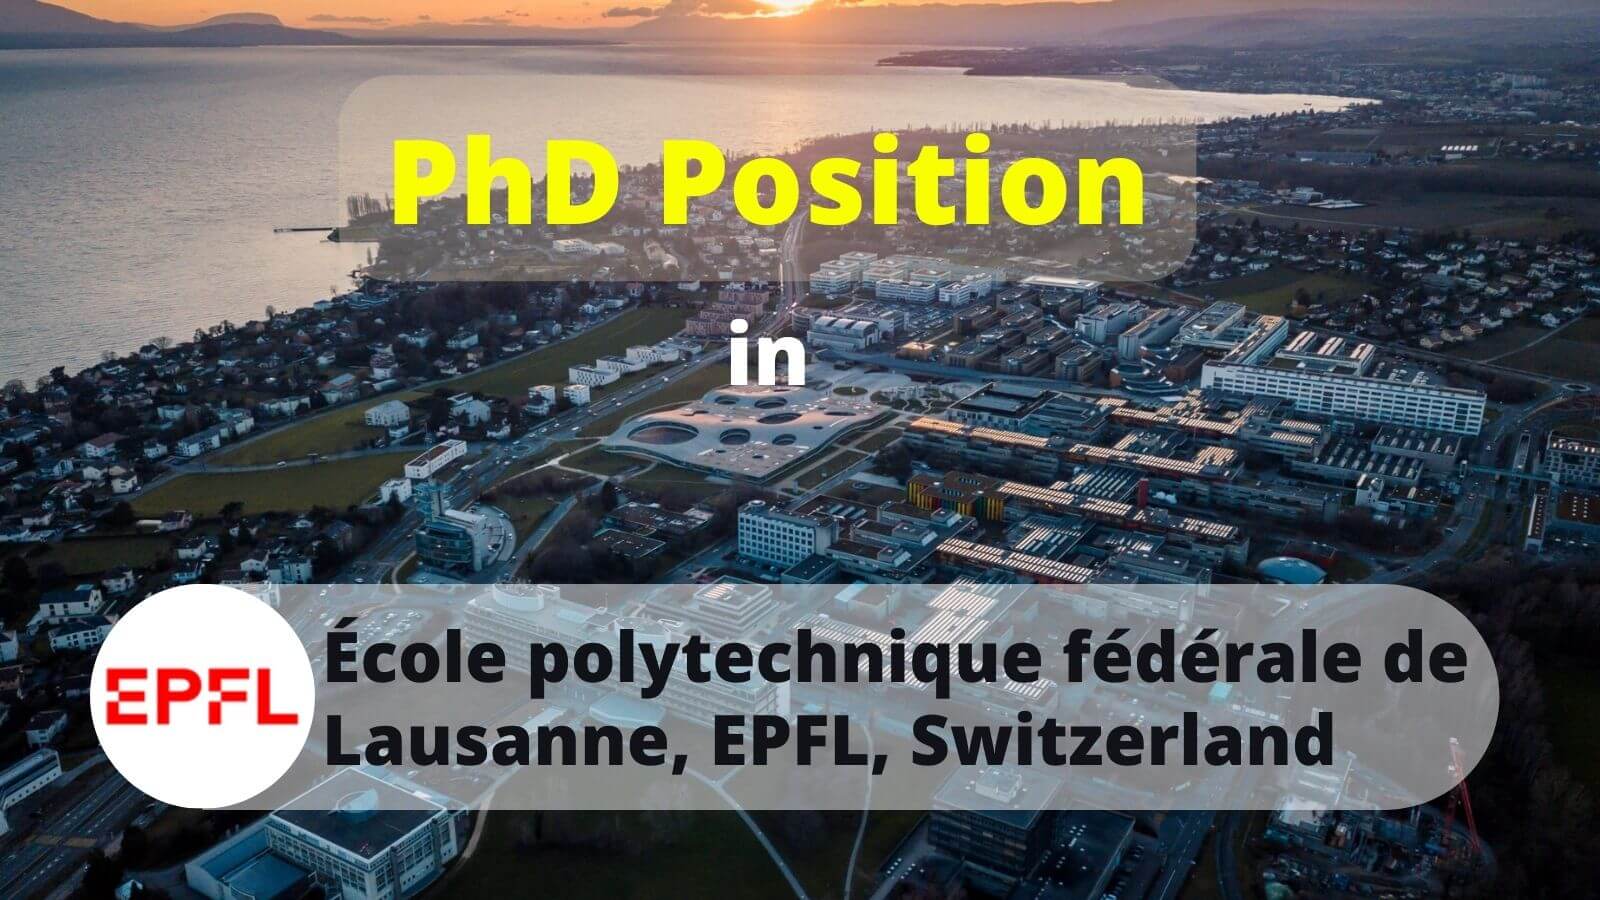 PhD Position in EPFL Switzerland